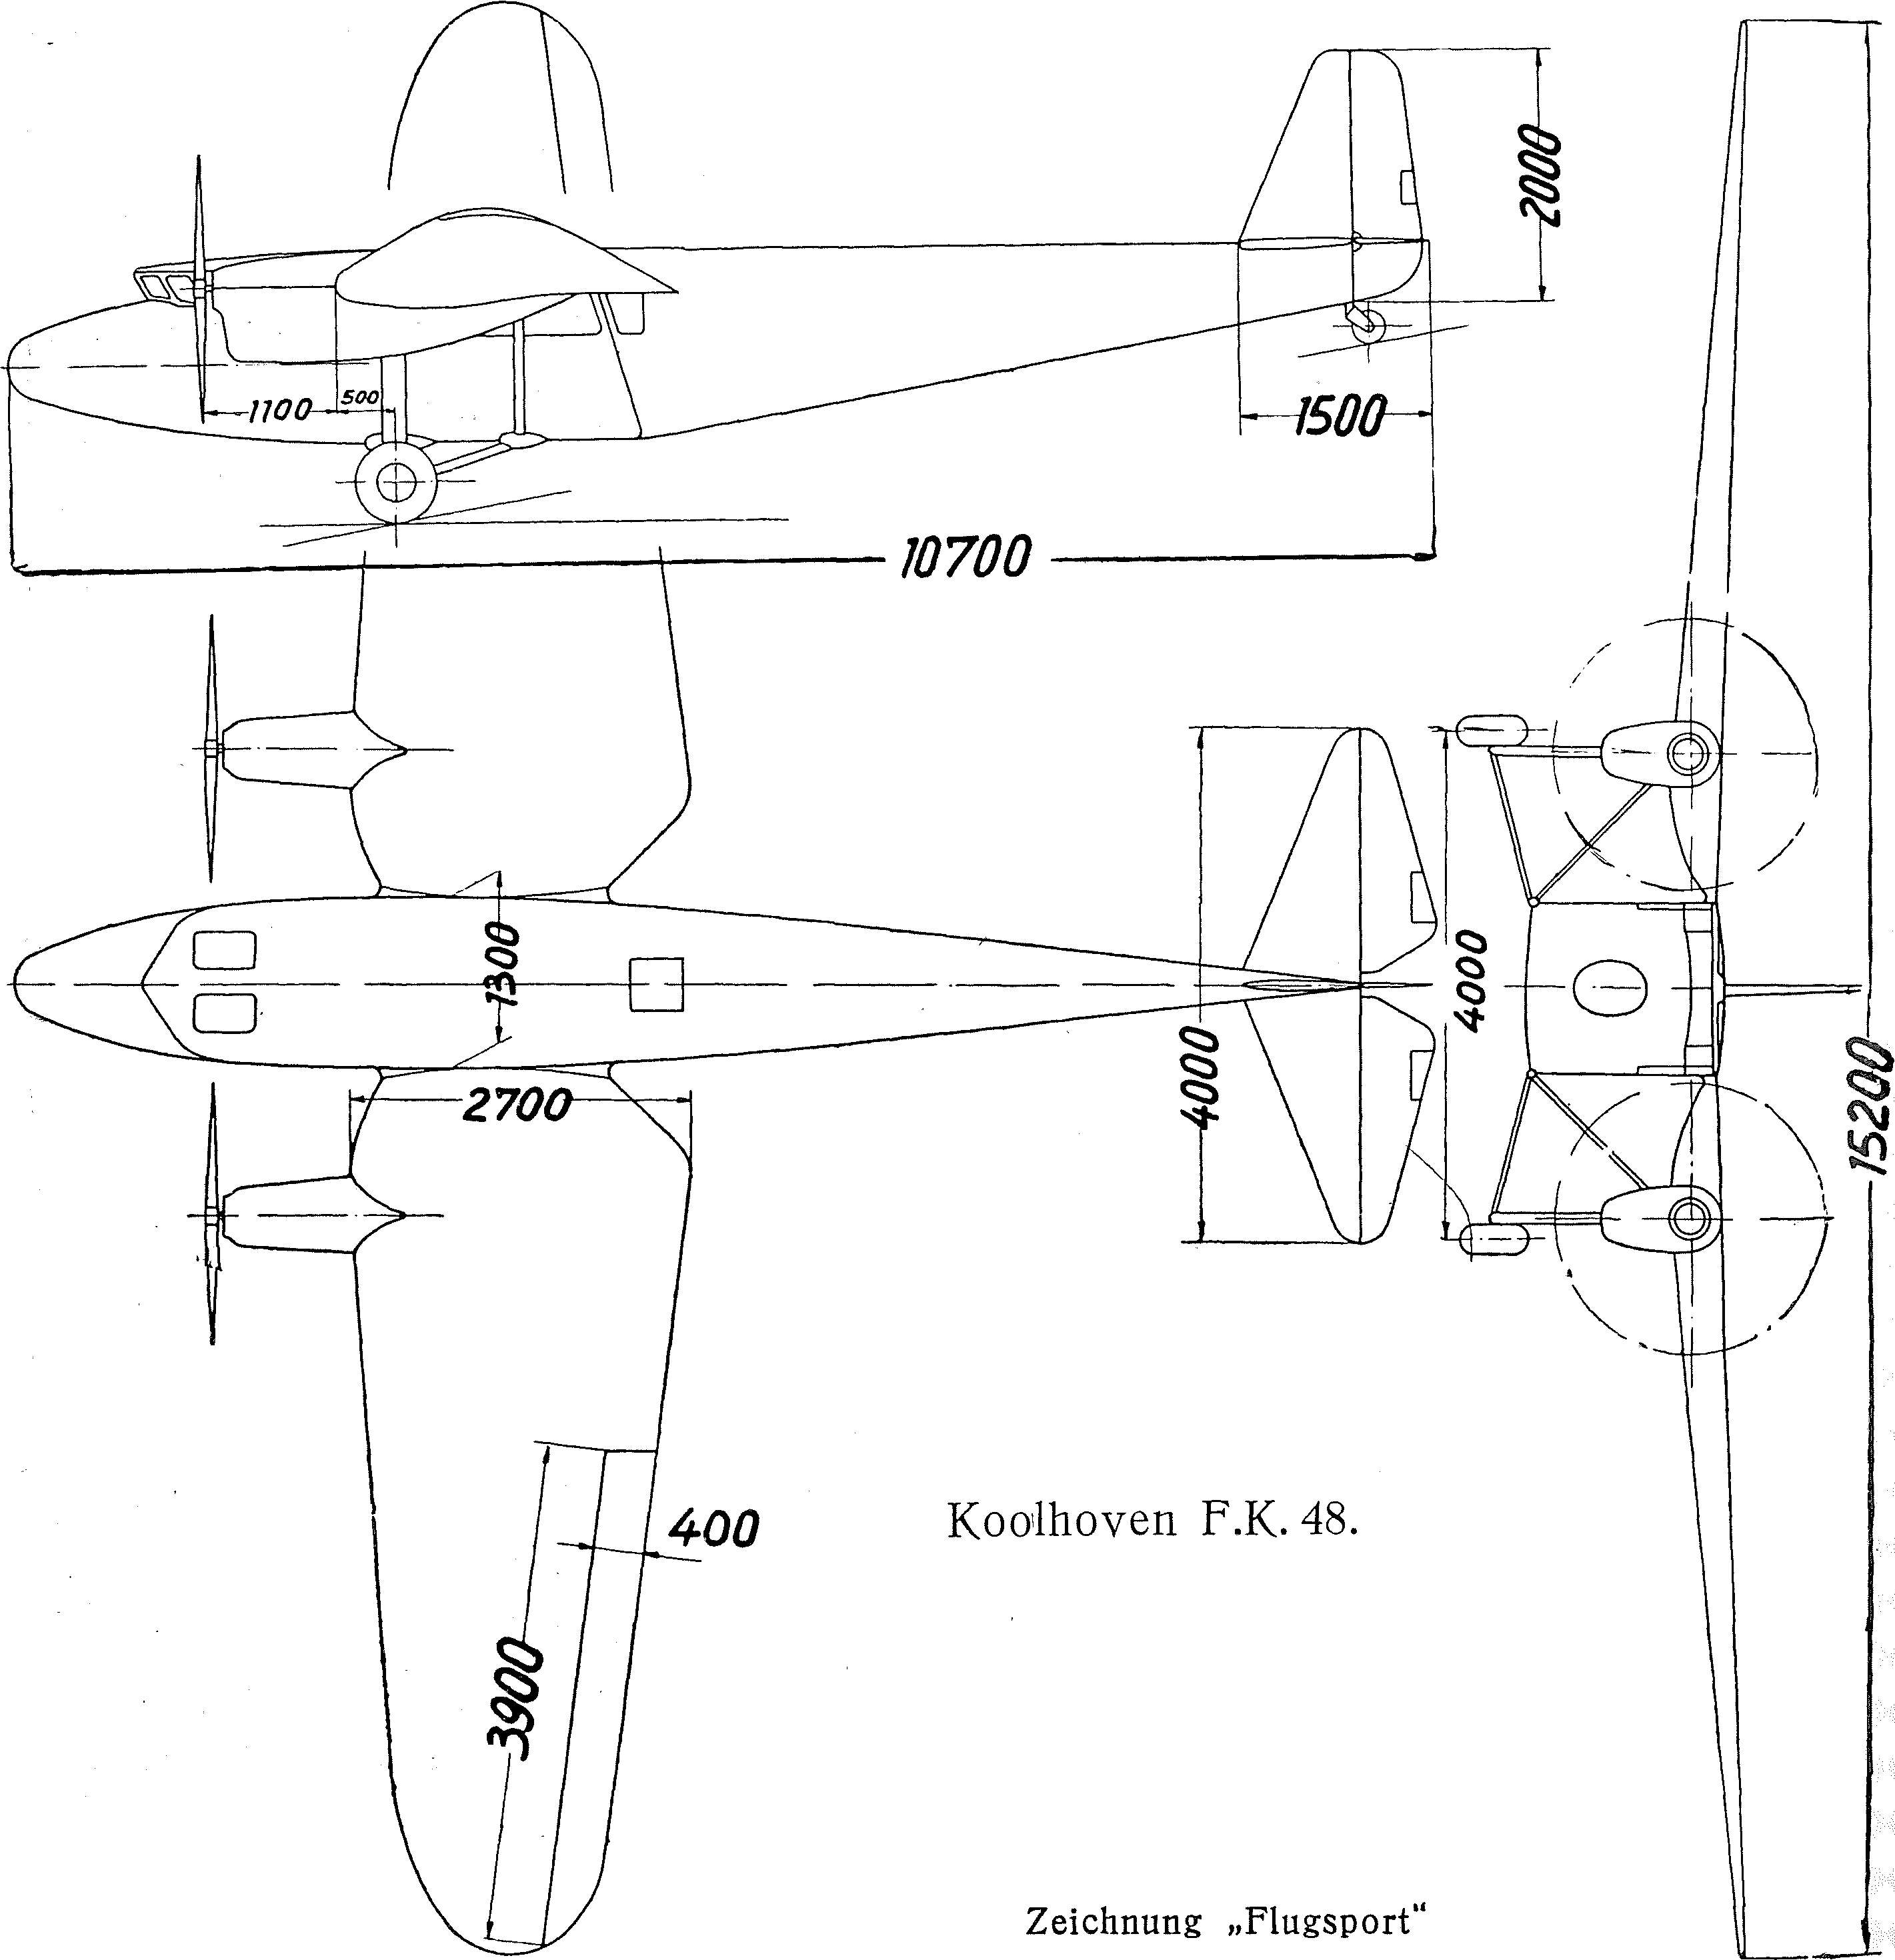 Luftfahrt und Luftverkehr sowie Luftwaffe im Dritten Reich 1934